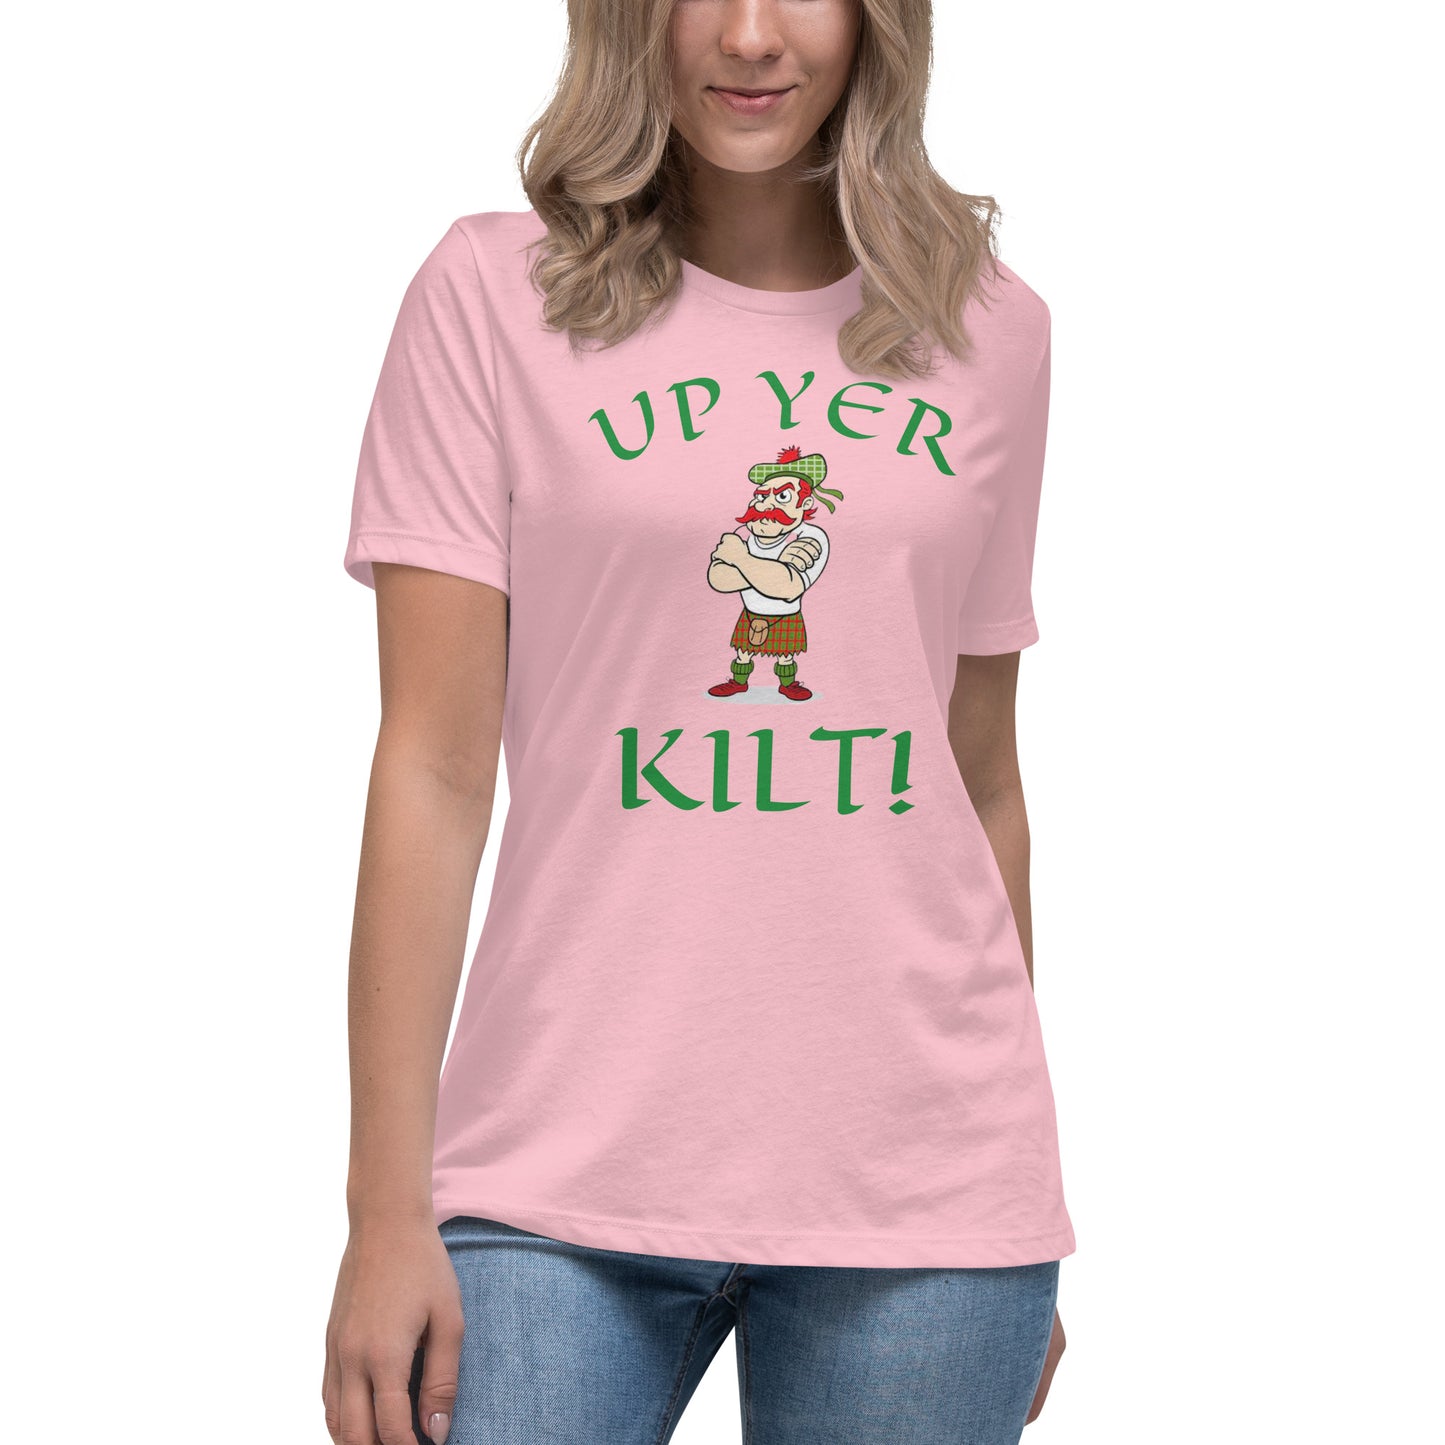 "Up yer kilt!" Women's Relaxed T-Shirt